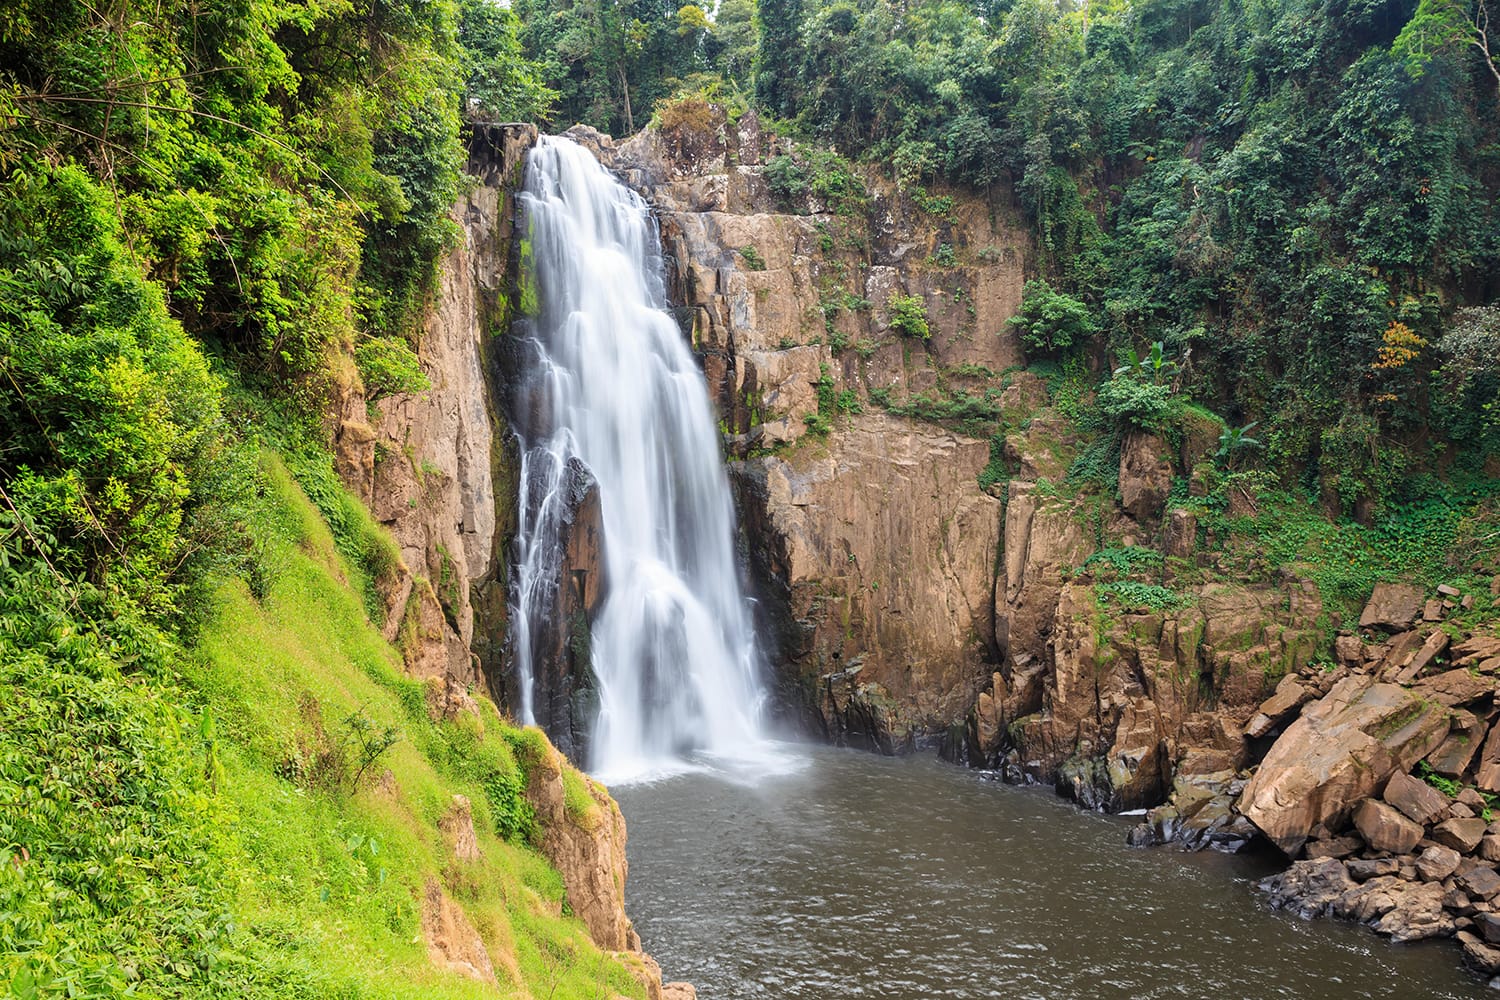 Haew Narok waterfall in Khao Yai National Park, Thailand